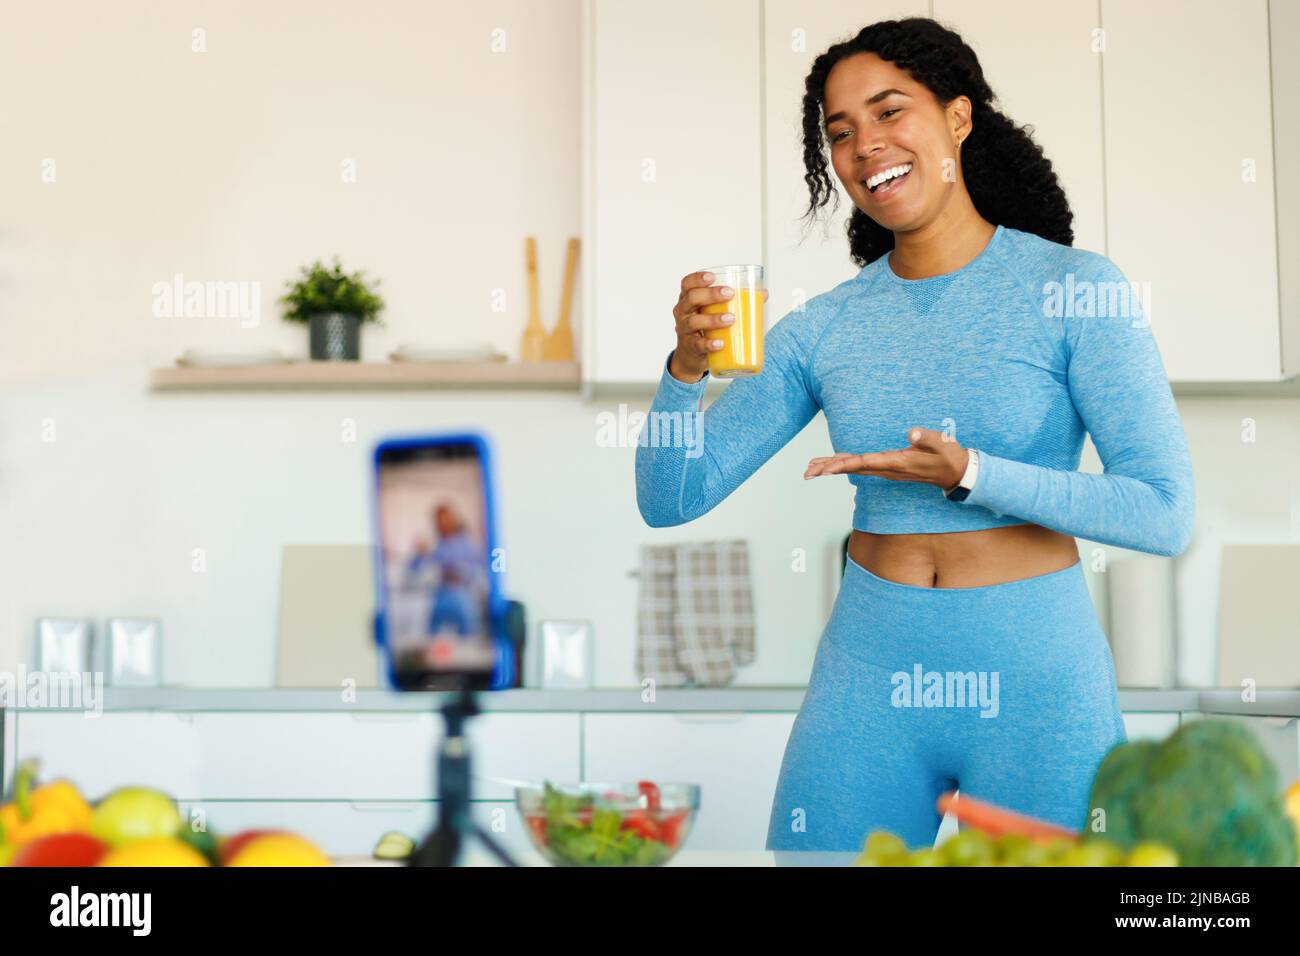 FIT Black Woman grabando vídeo sobre alimentación saludable, mostrando un vaso de zumo fresco en la cámara del smartphone en la cocina Foto de stock